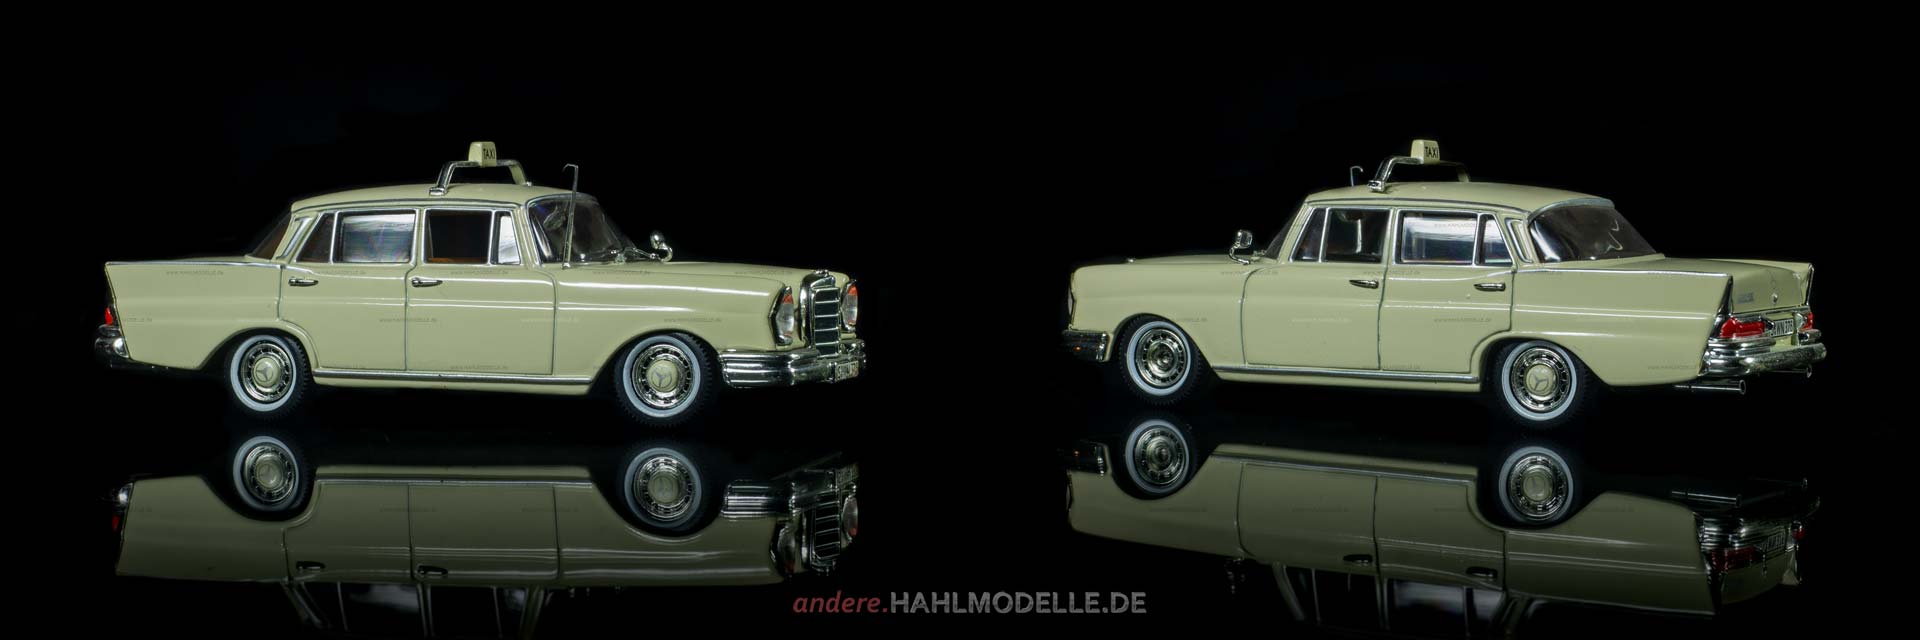 Mercedes-Benz 220 SE (W 111) | Limousine (Taxi) | Vitesse | www.andere.hahlmodelle.de